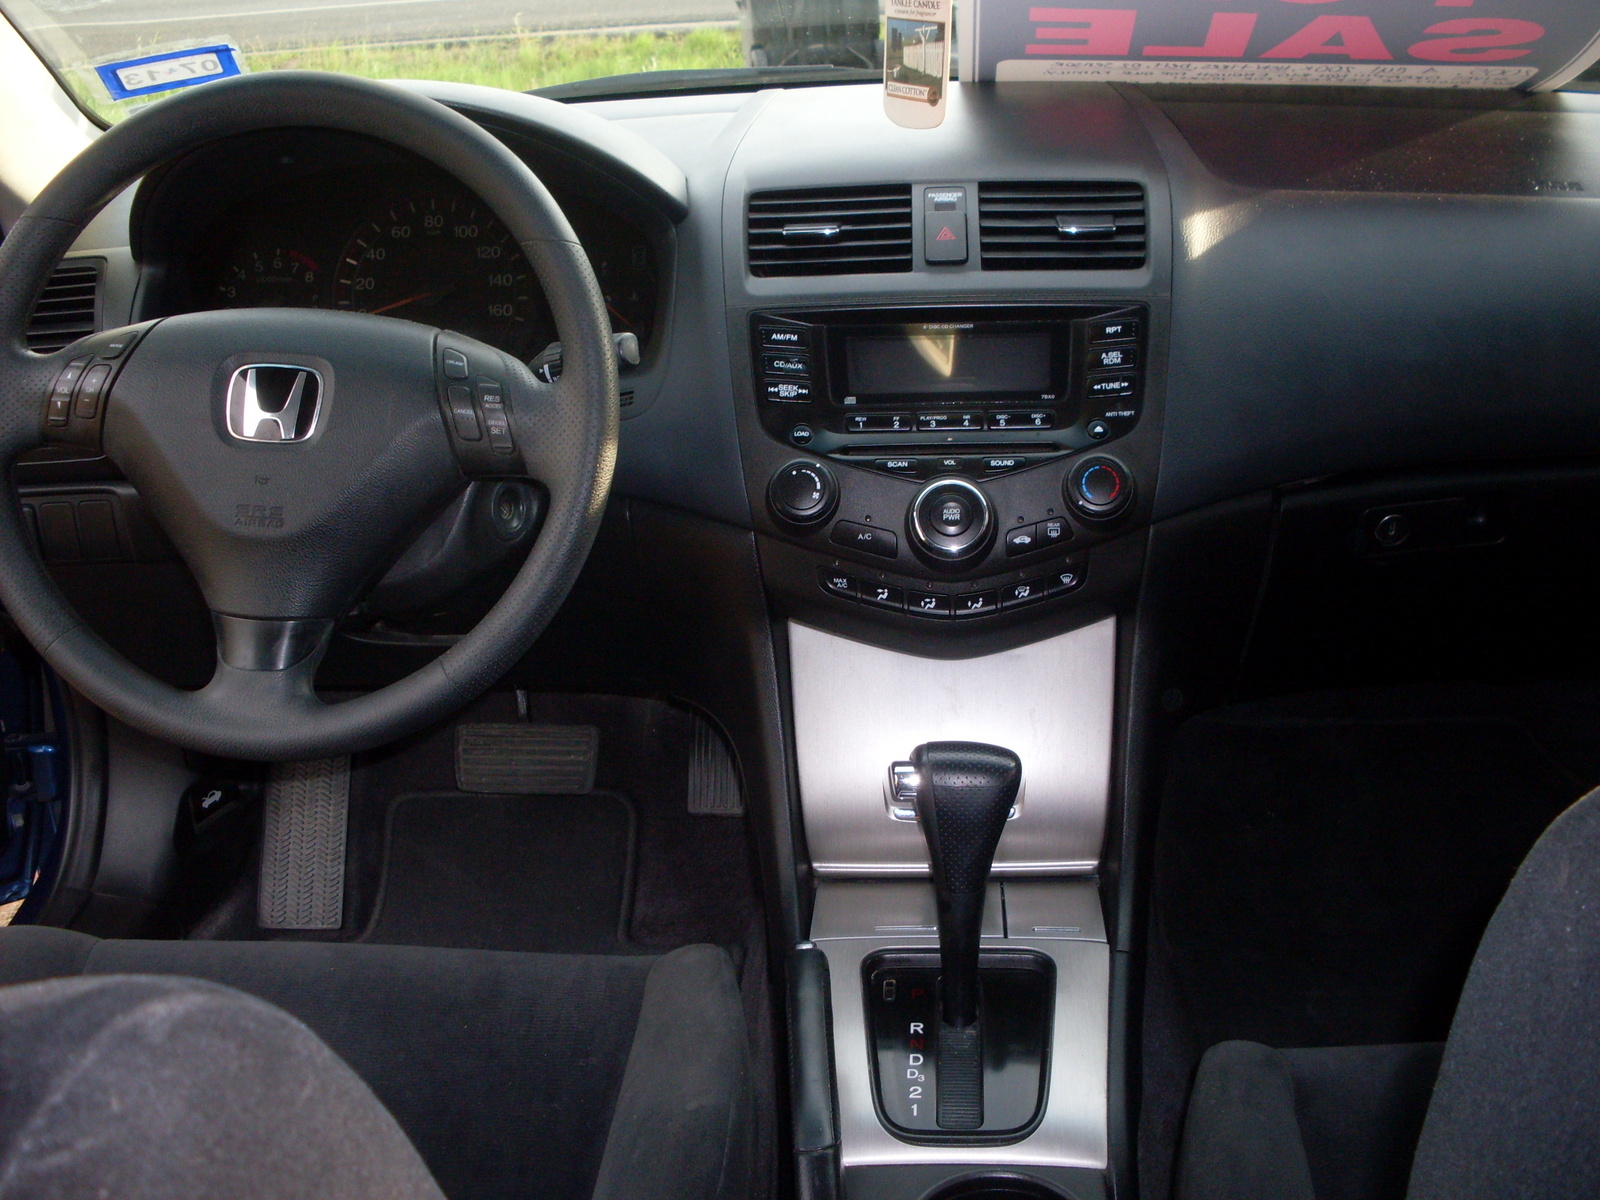 2007 Honda Accord Coupe  Interior Pictures  CarGurus